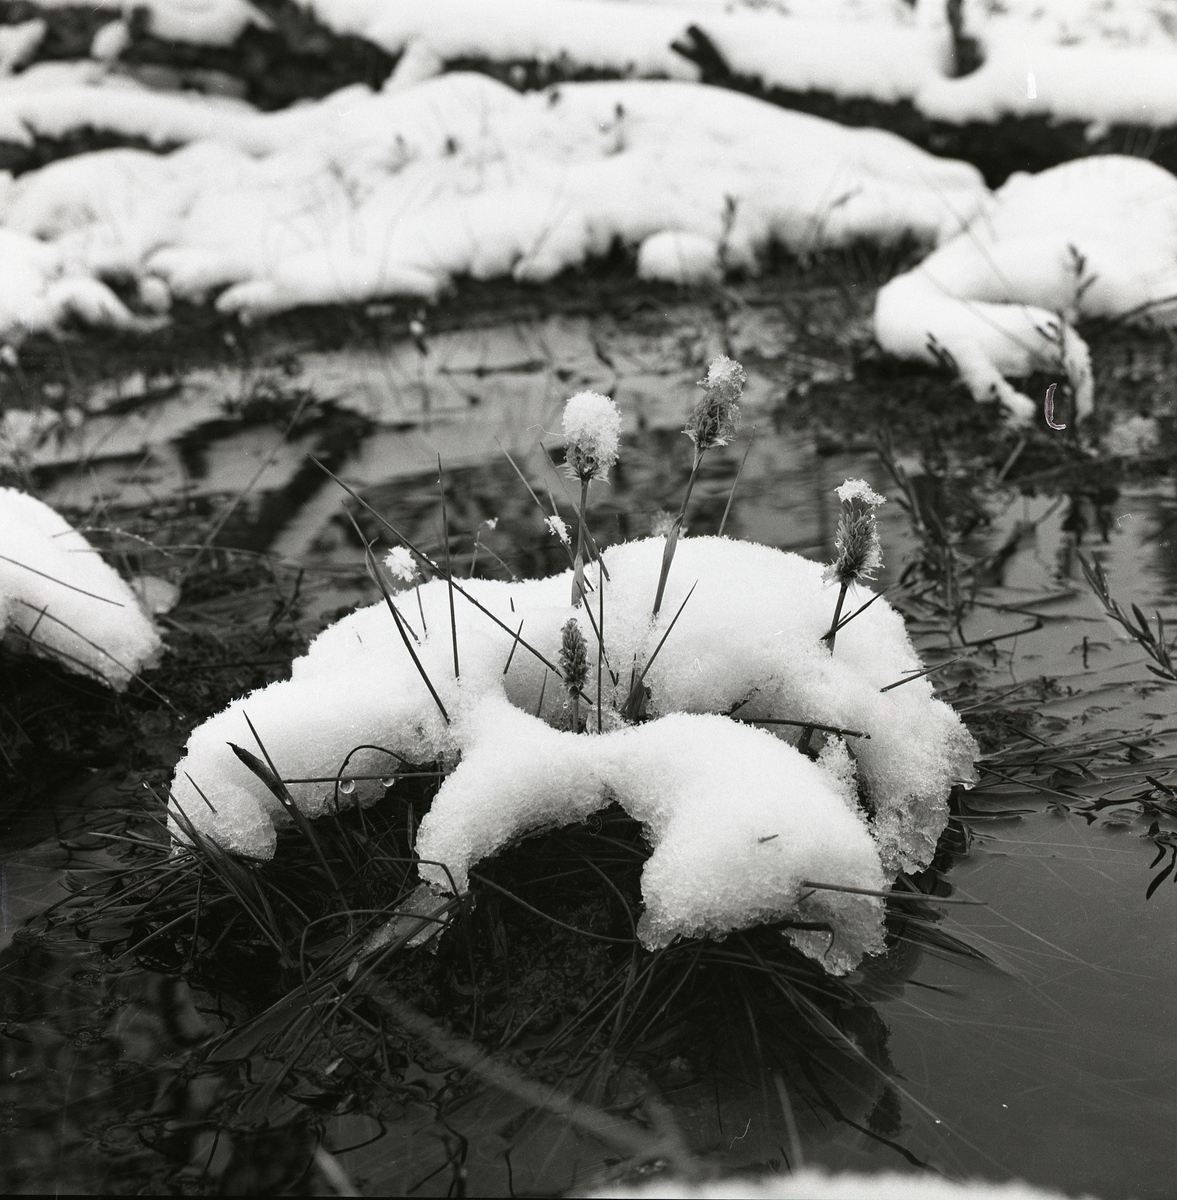 Tuvull i snö och vatten ute på en myr, Degeln 19 mars 1961.